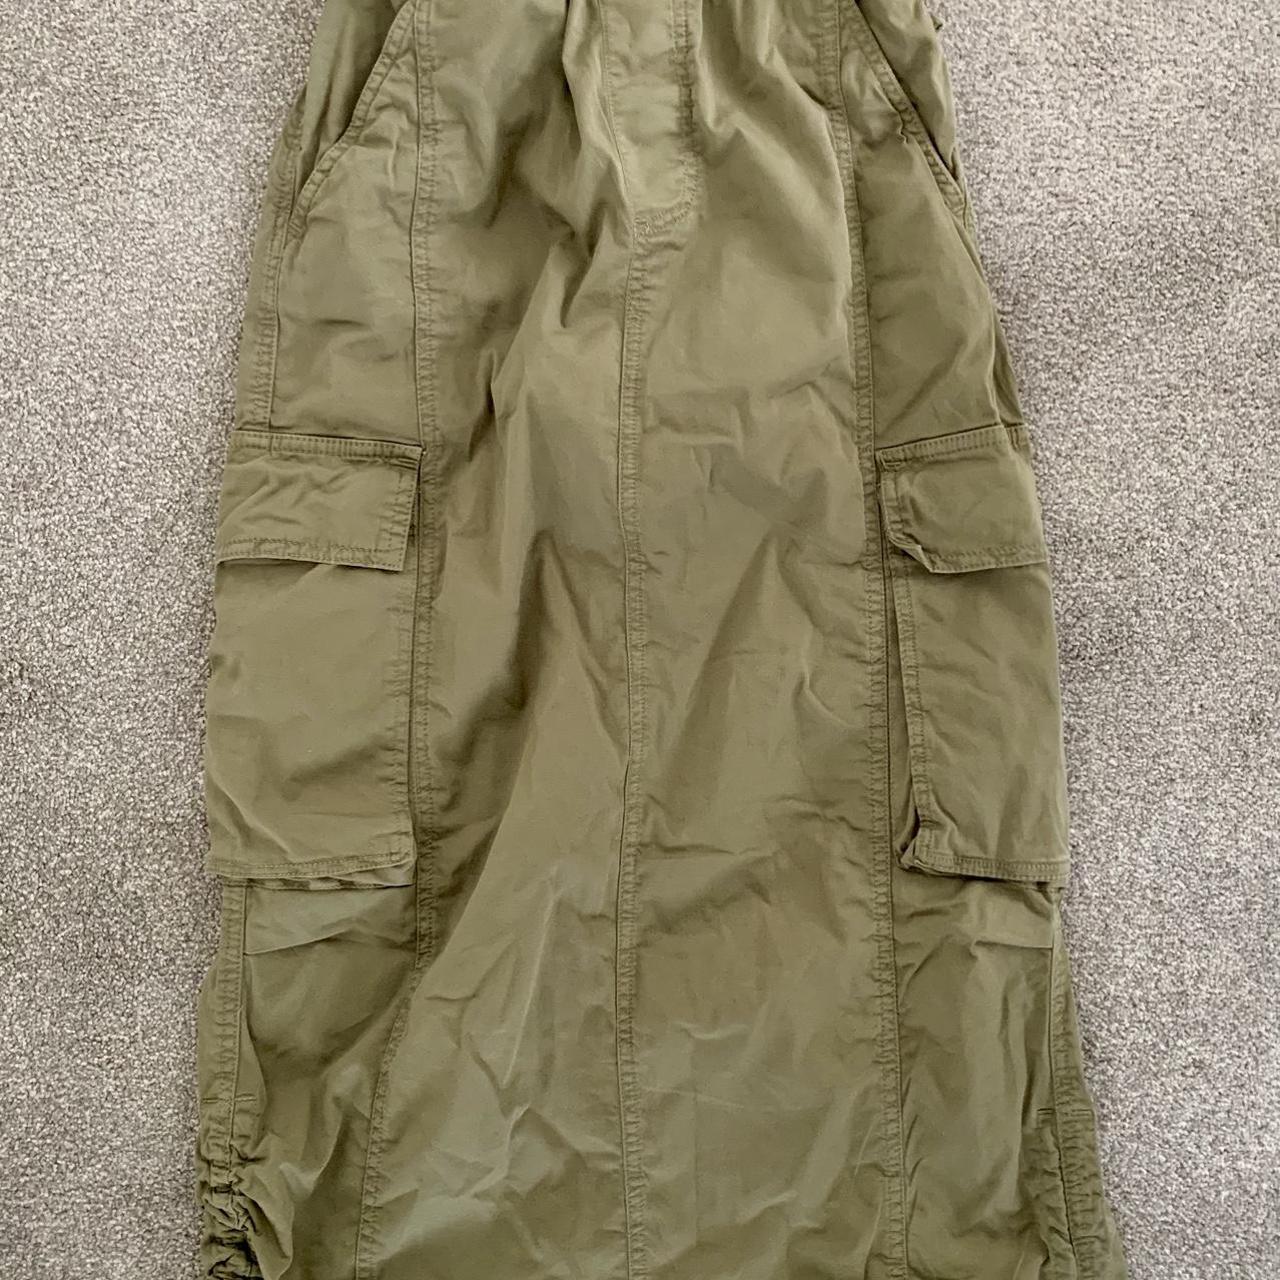 Berksha Parachute Cargo Skirt - worn once - Depop